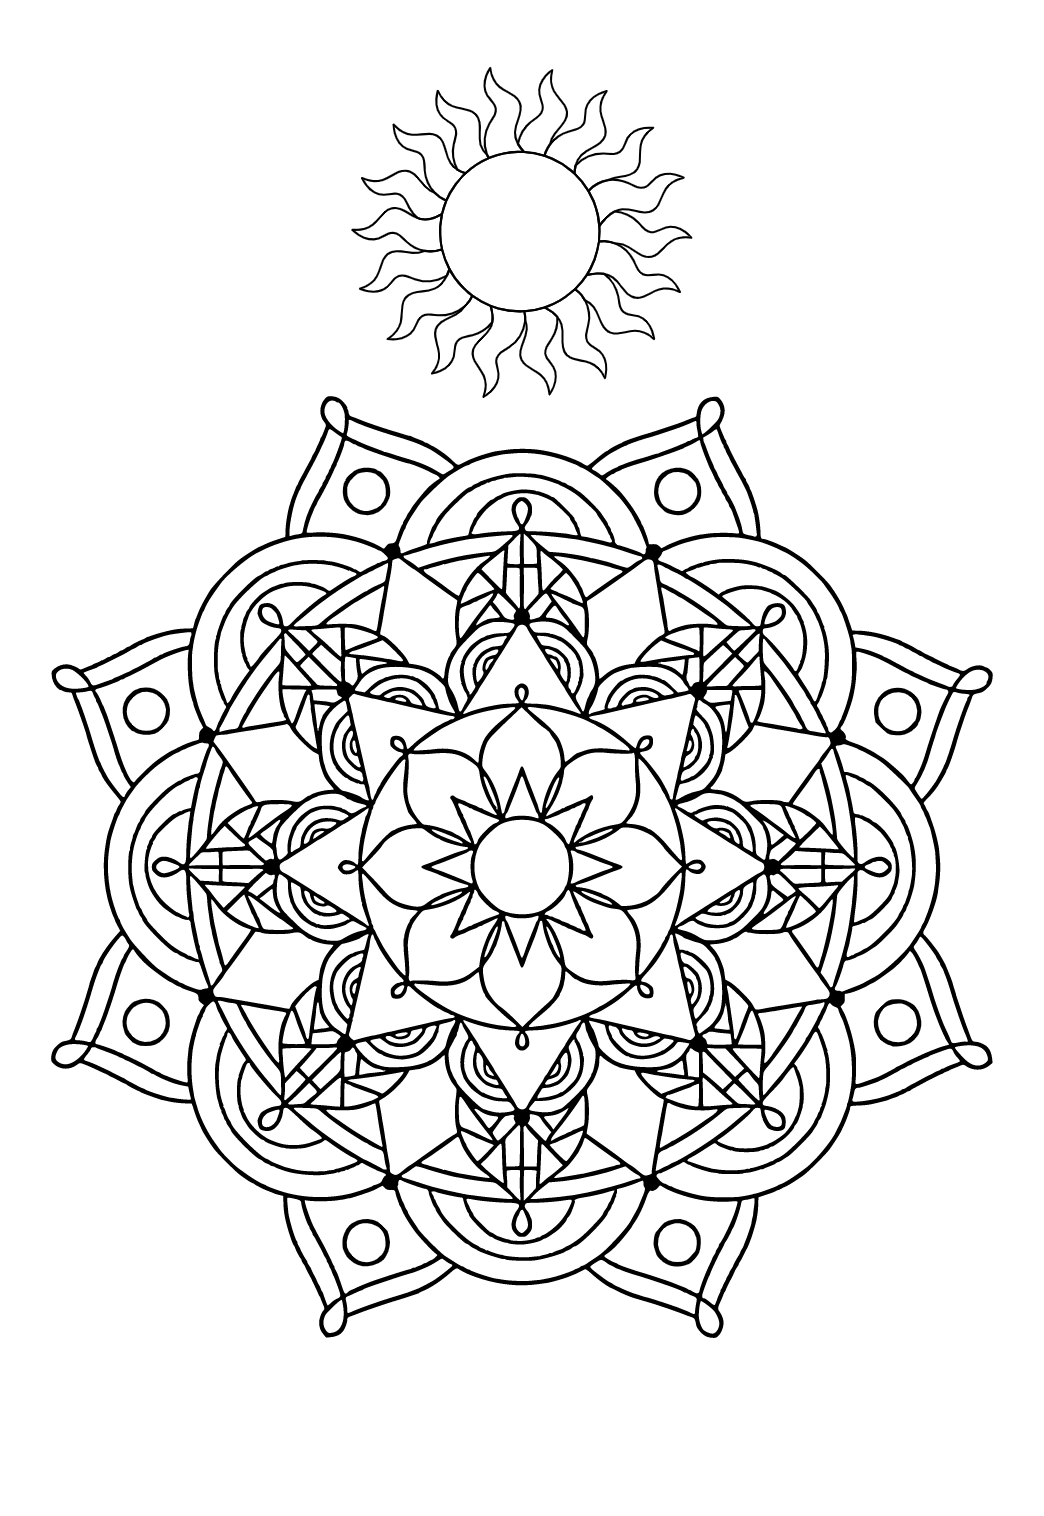 Coloriage Mandala Imprimer Coloriage Mandala Fleur à Imprimer Gratuit pour Adultes et Enfants -  Lystok.com